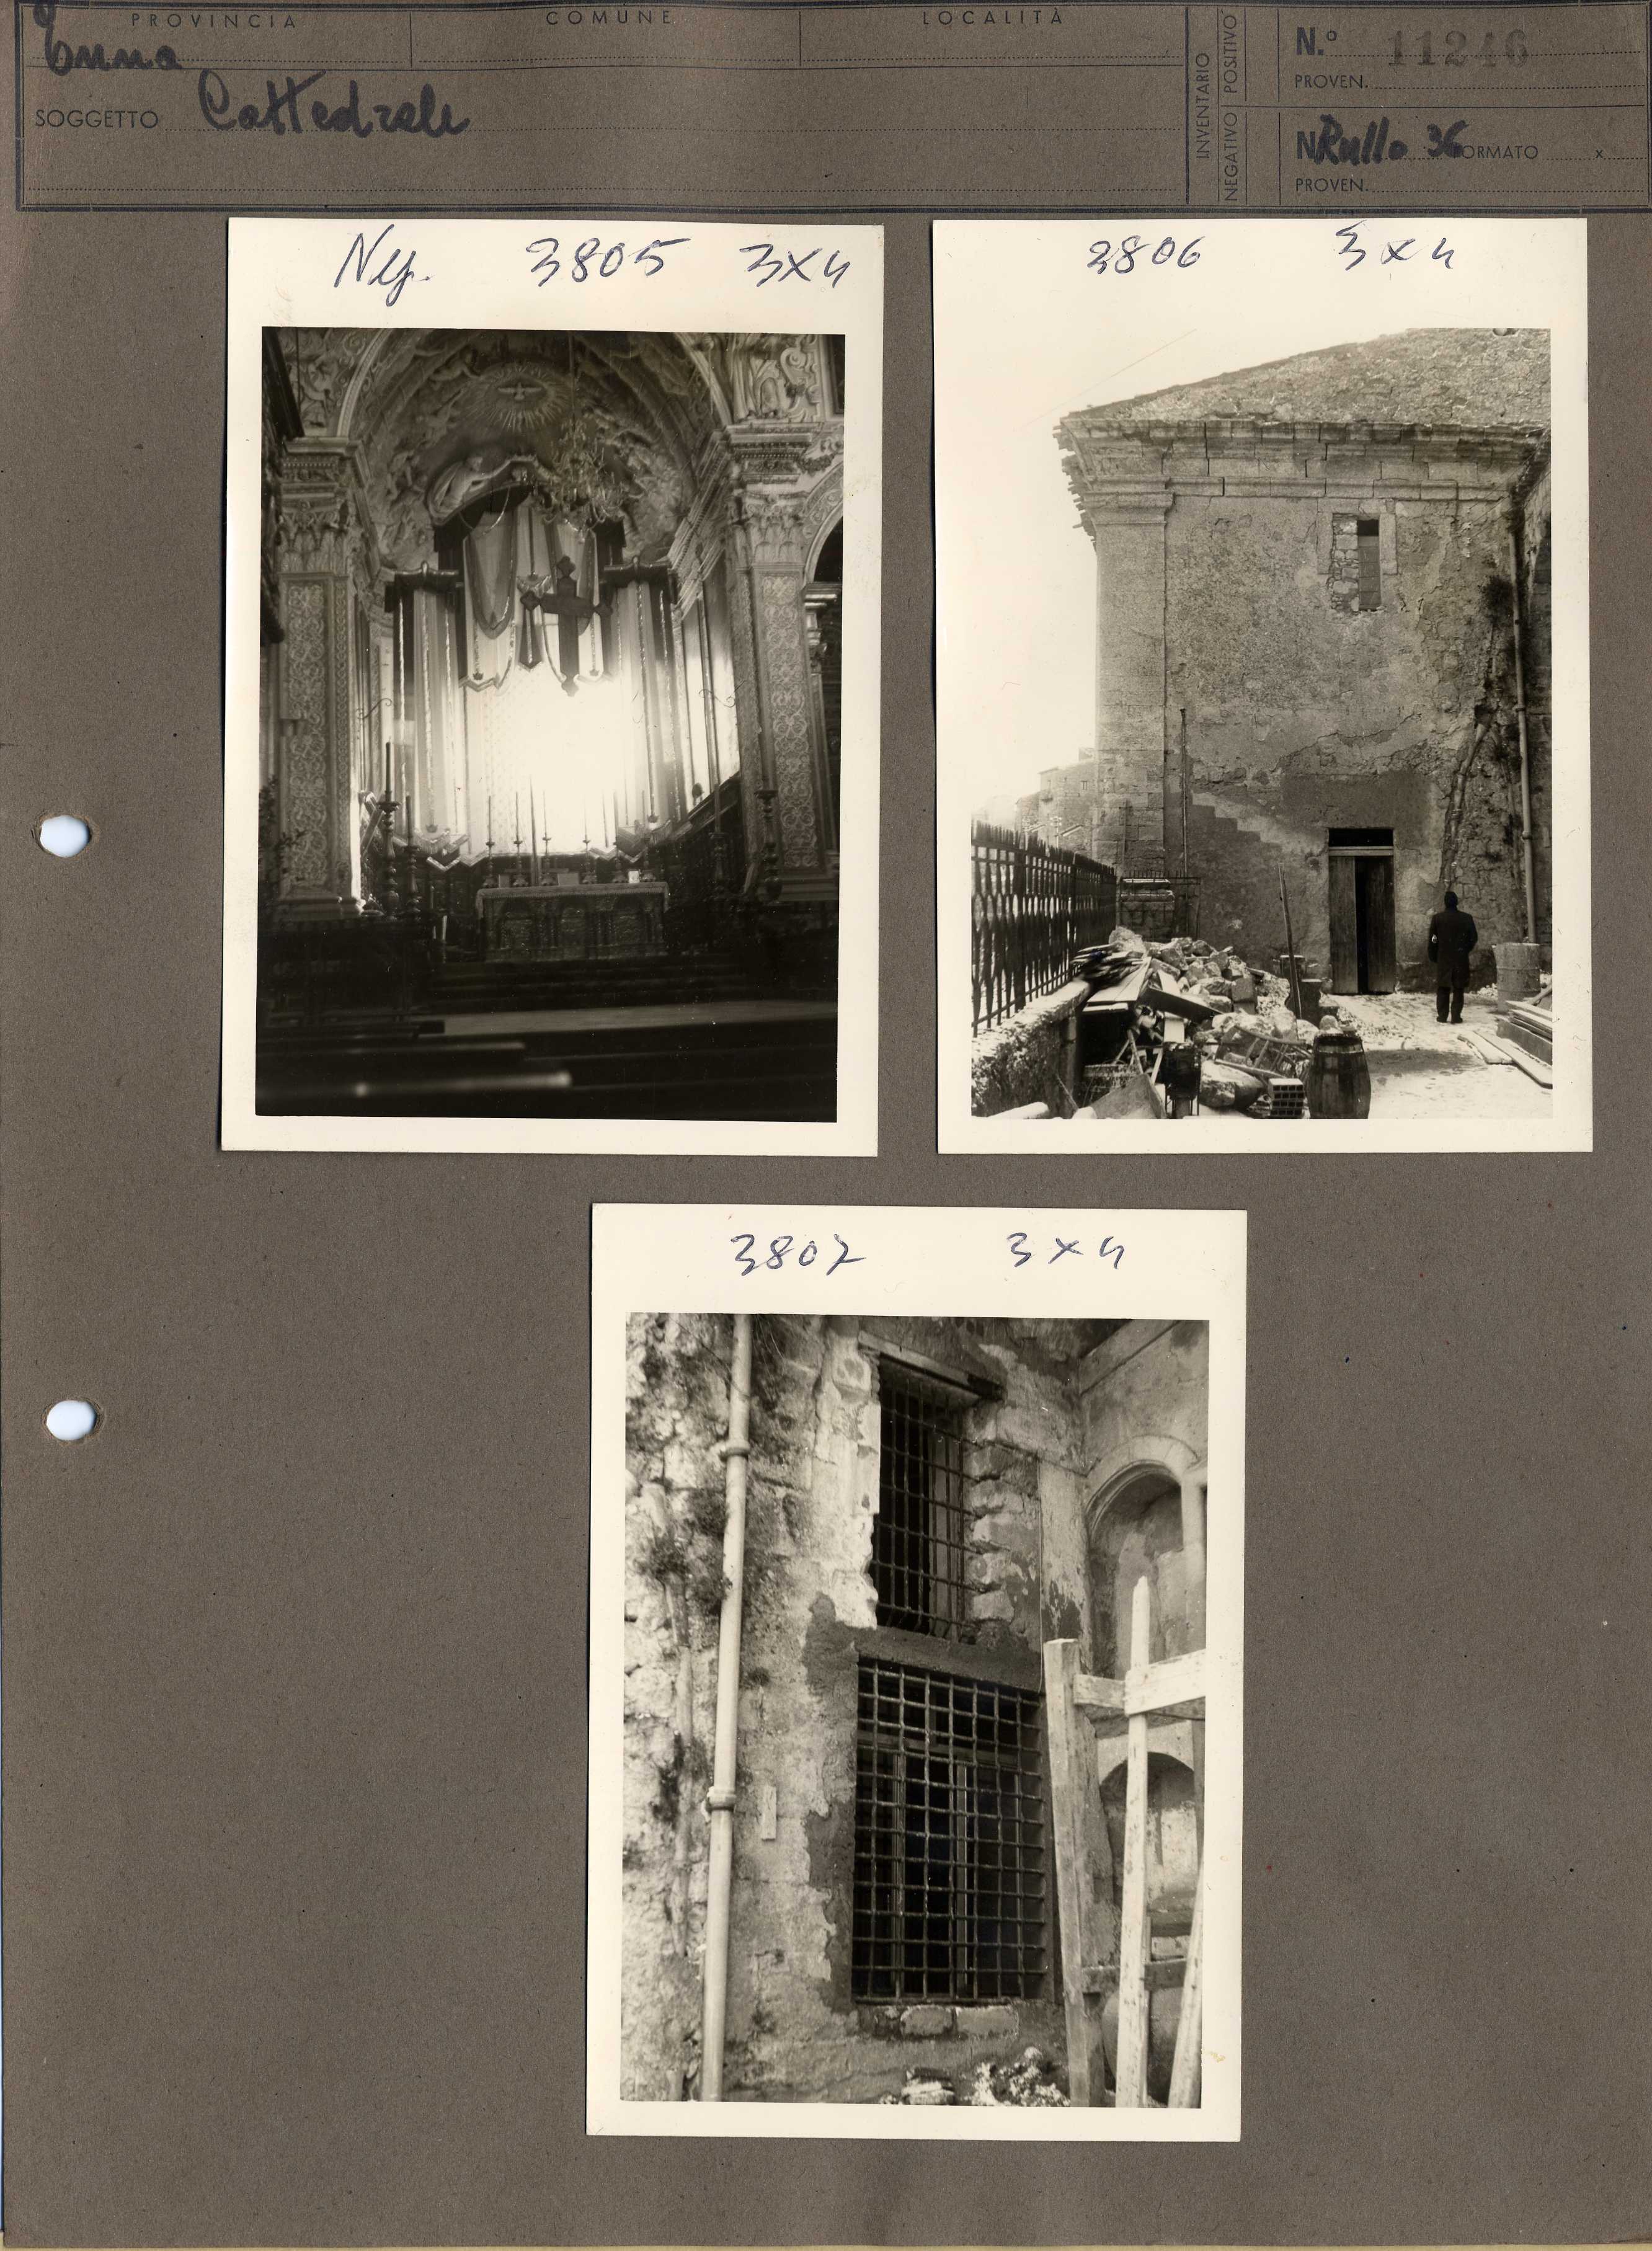 Sicilia - Enna – Architettura religiosa - Duomo (positivo, elemento-parte componente, scheda di supporto) di Anonimo <1951 - 2000> (terzo quarto XX)